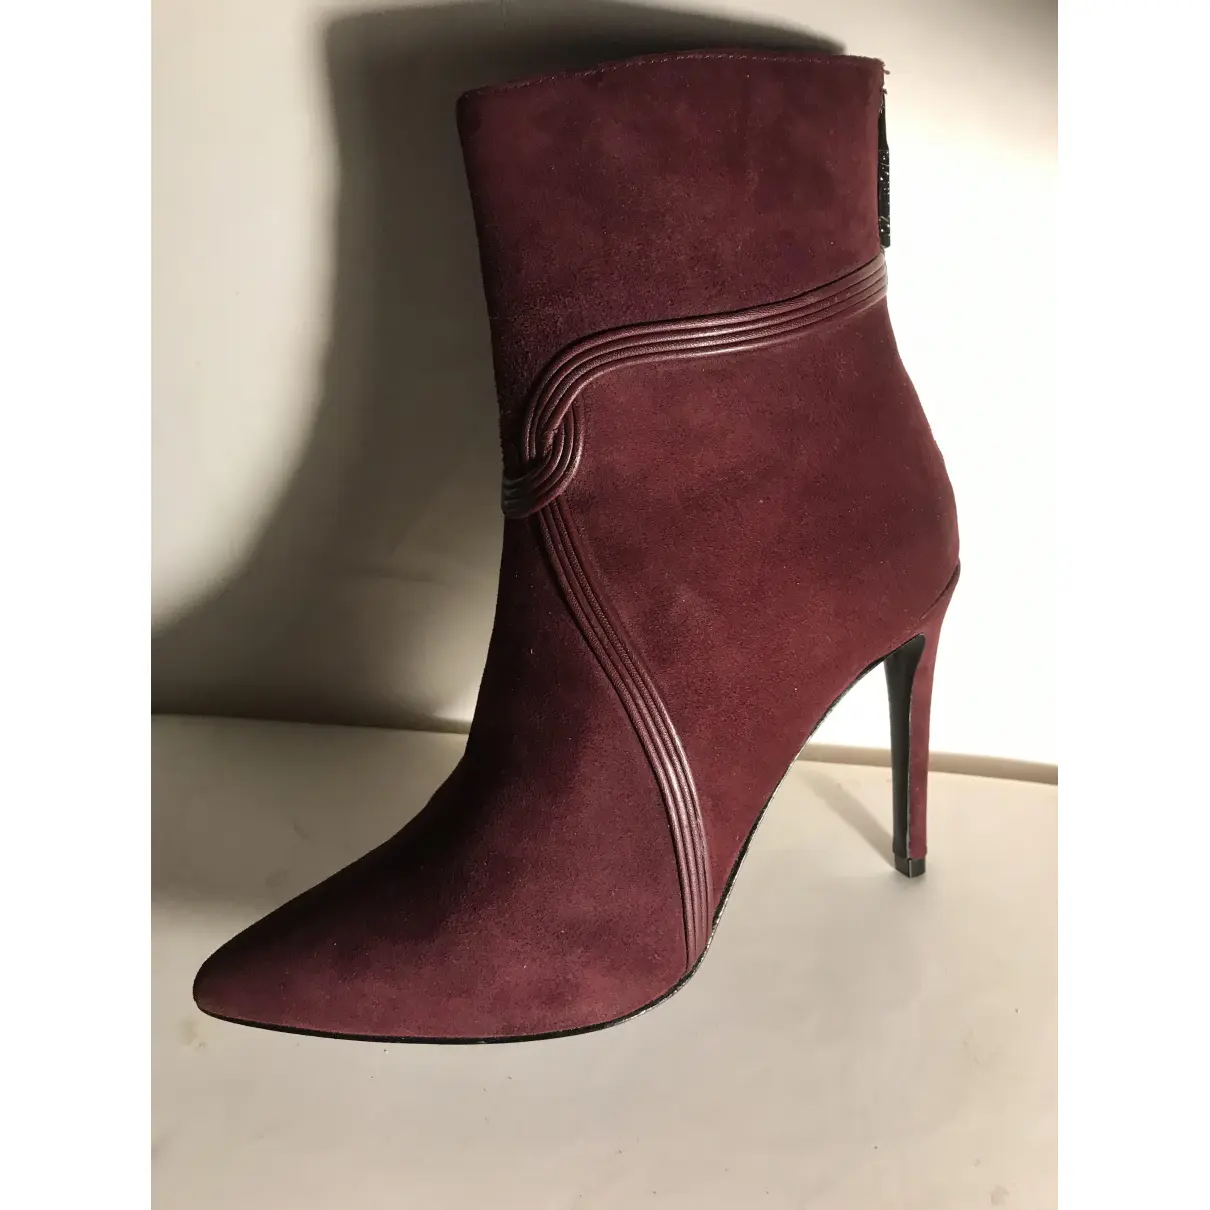 Buy Rachel Zoe Ankle boots online